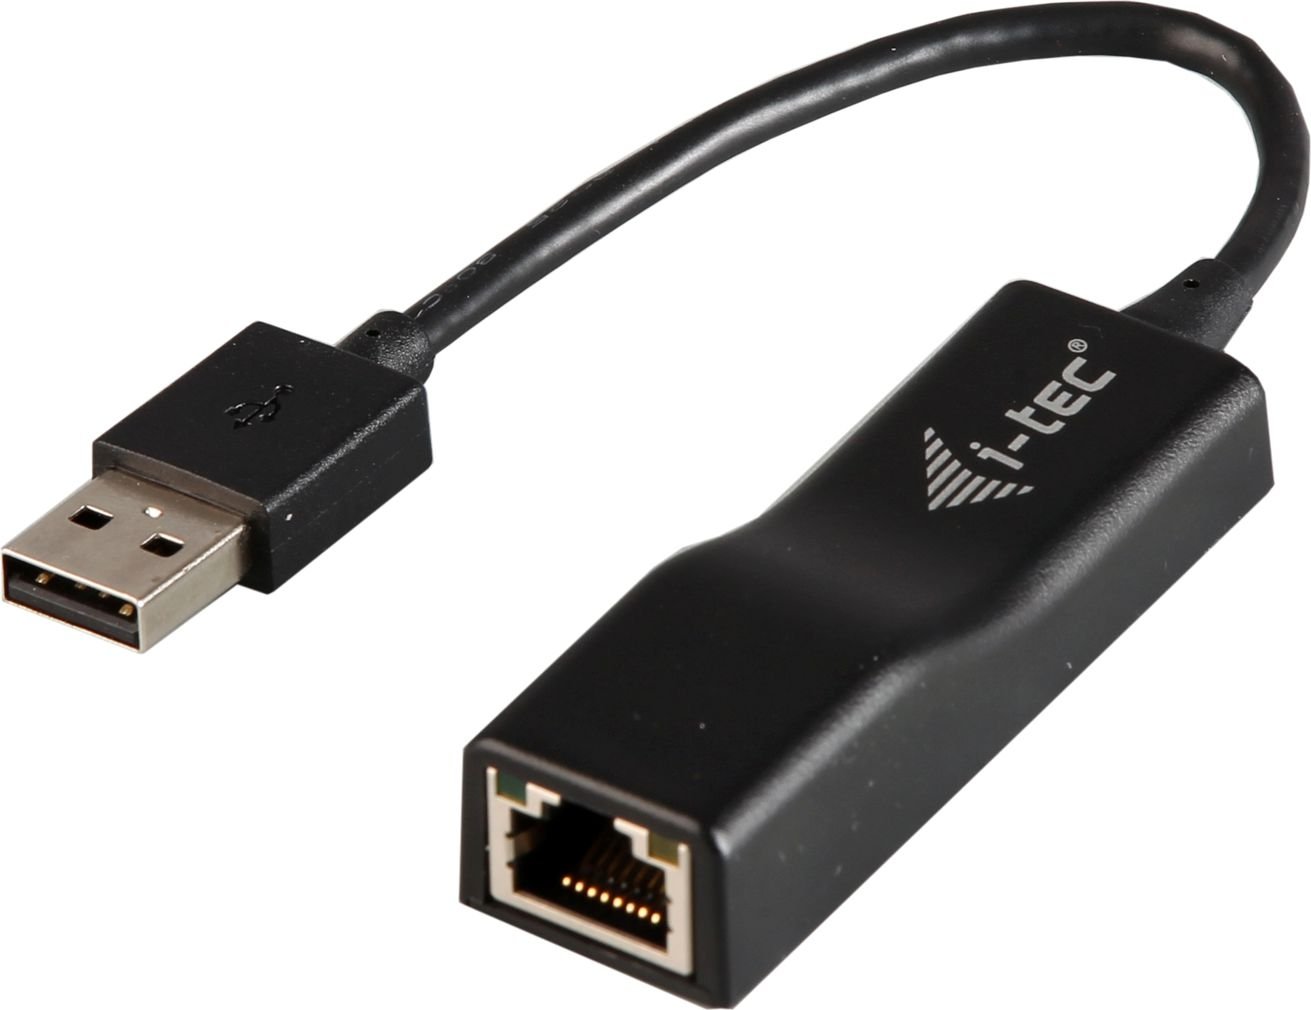 Placi de retea - Adaptor wireless I-Tec, USB 2.0